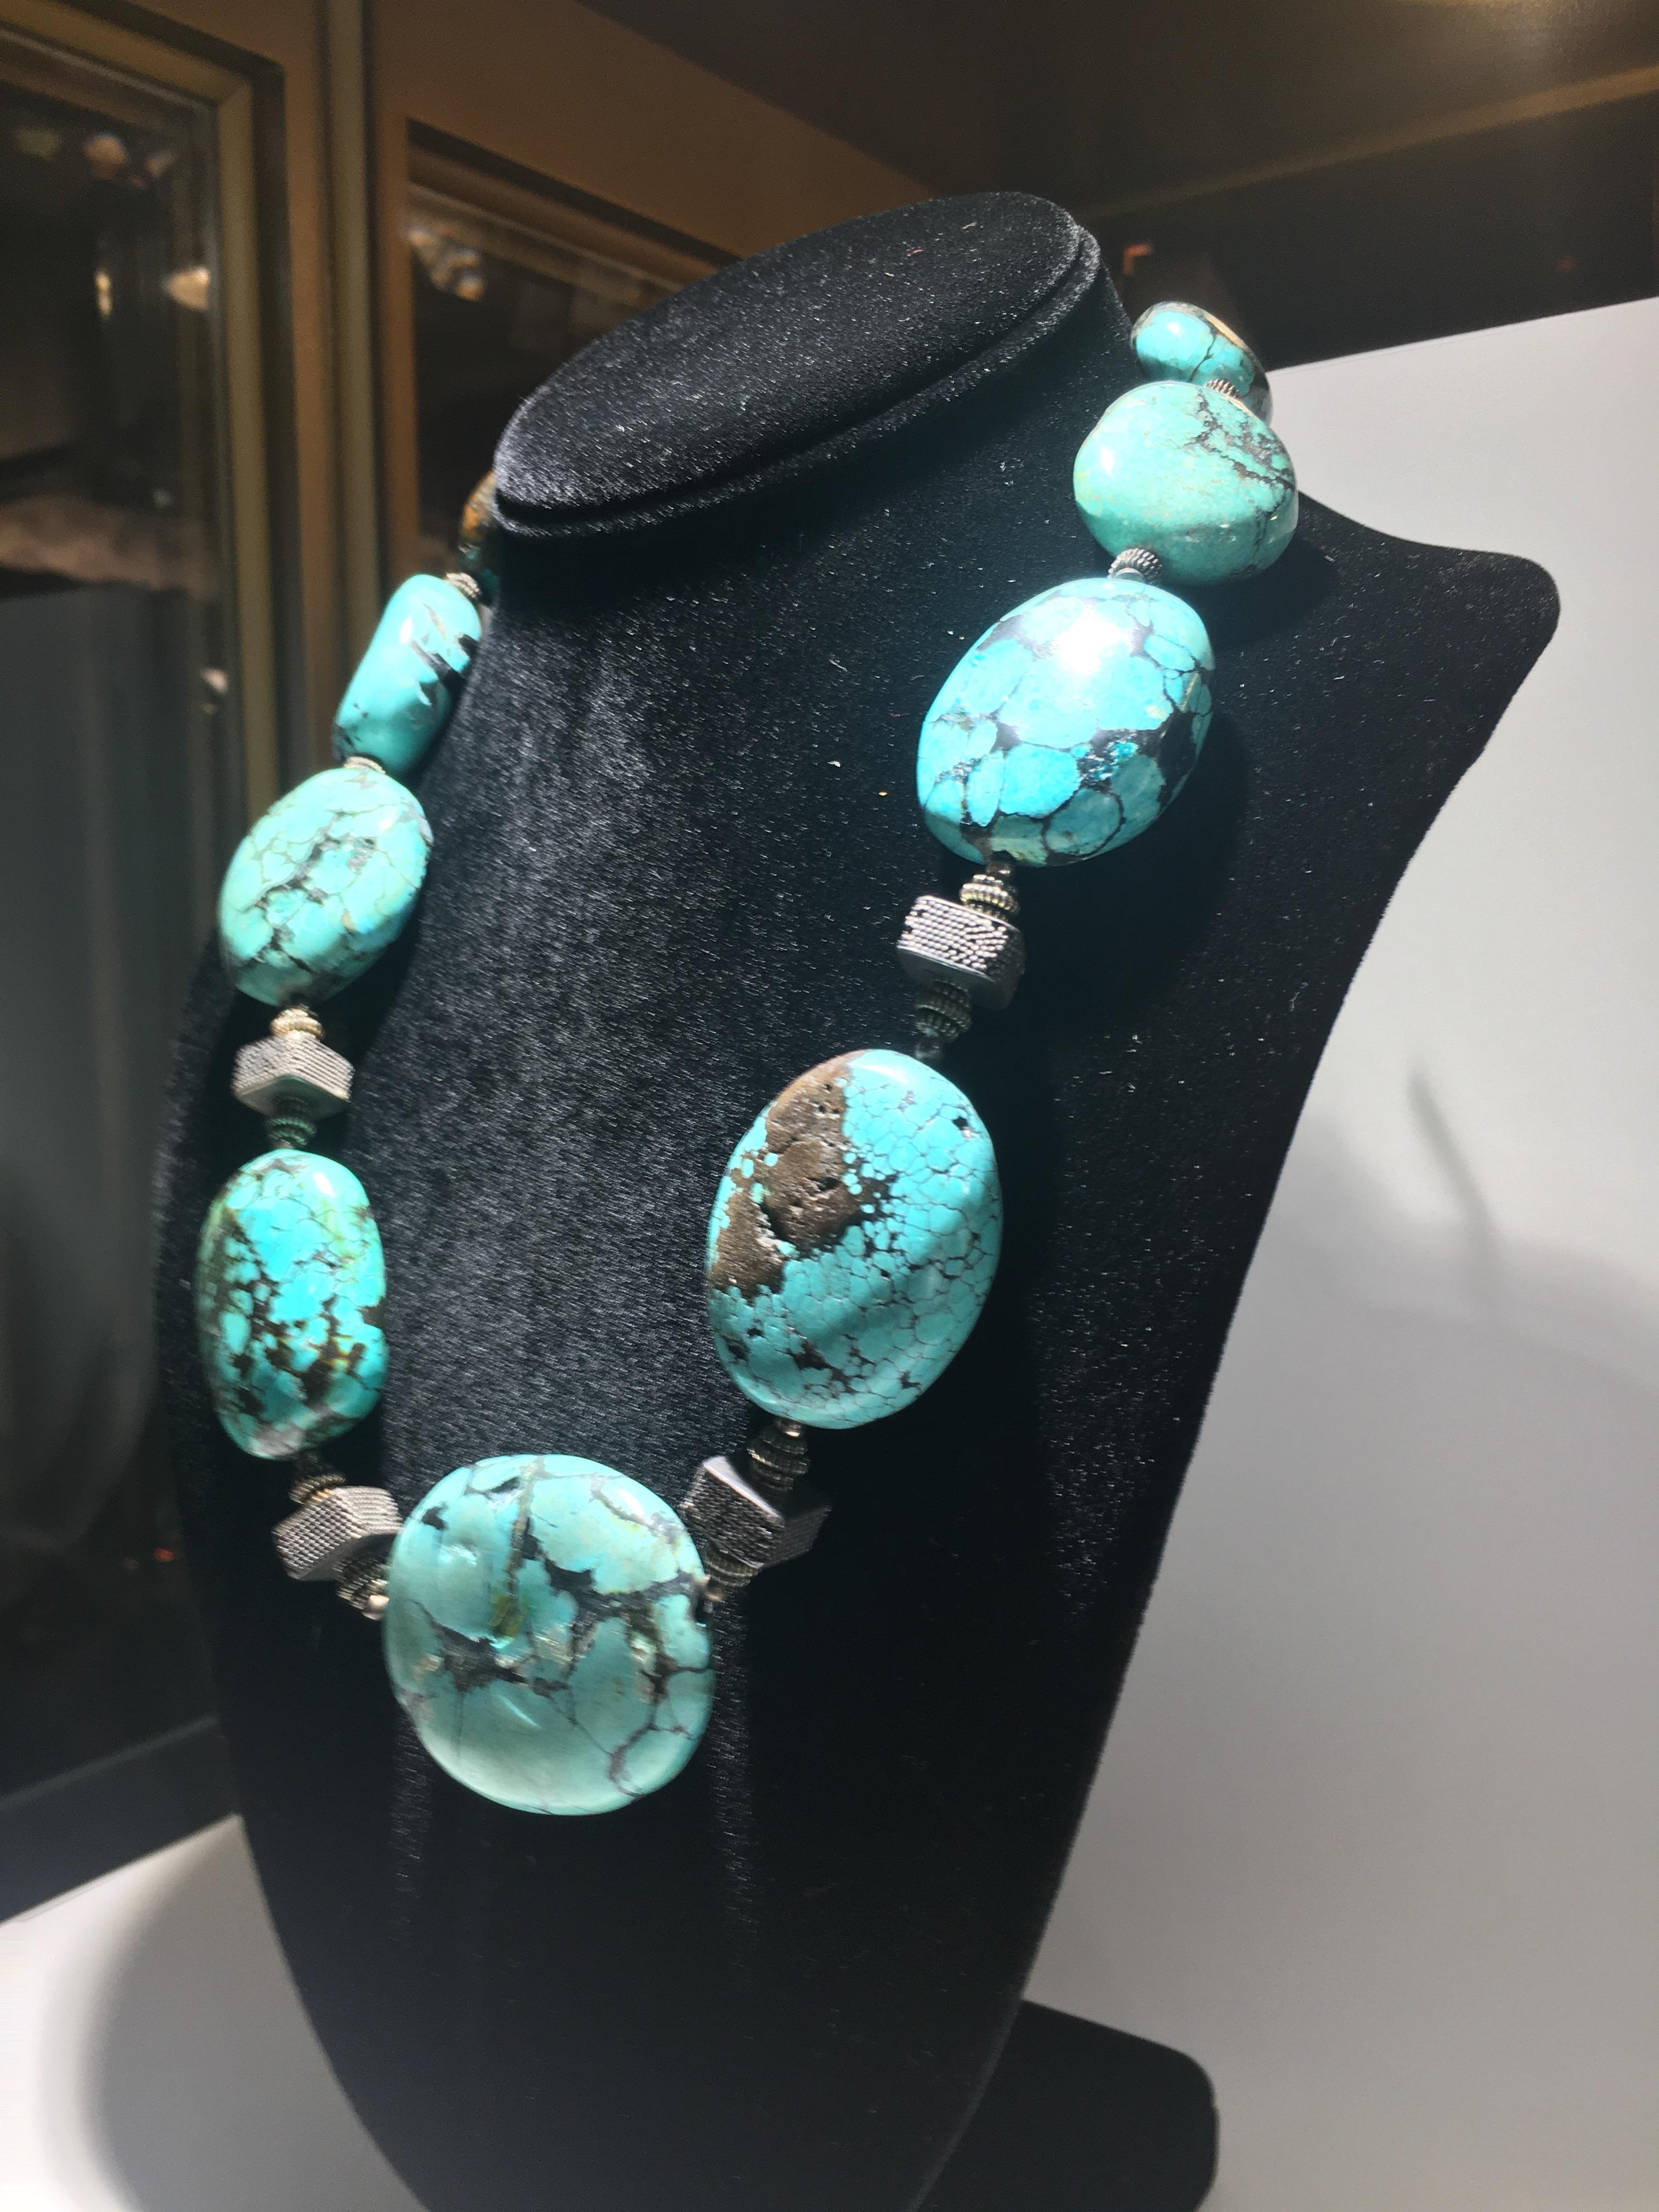 iris apfel turquoise jewelry